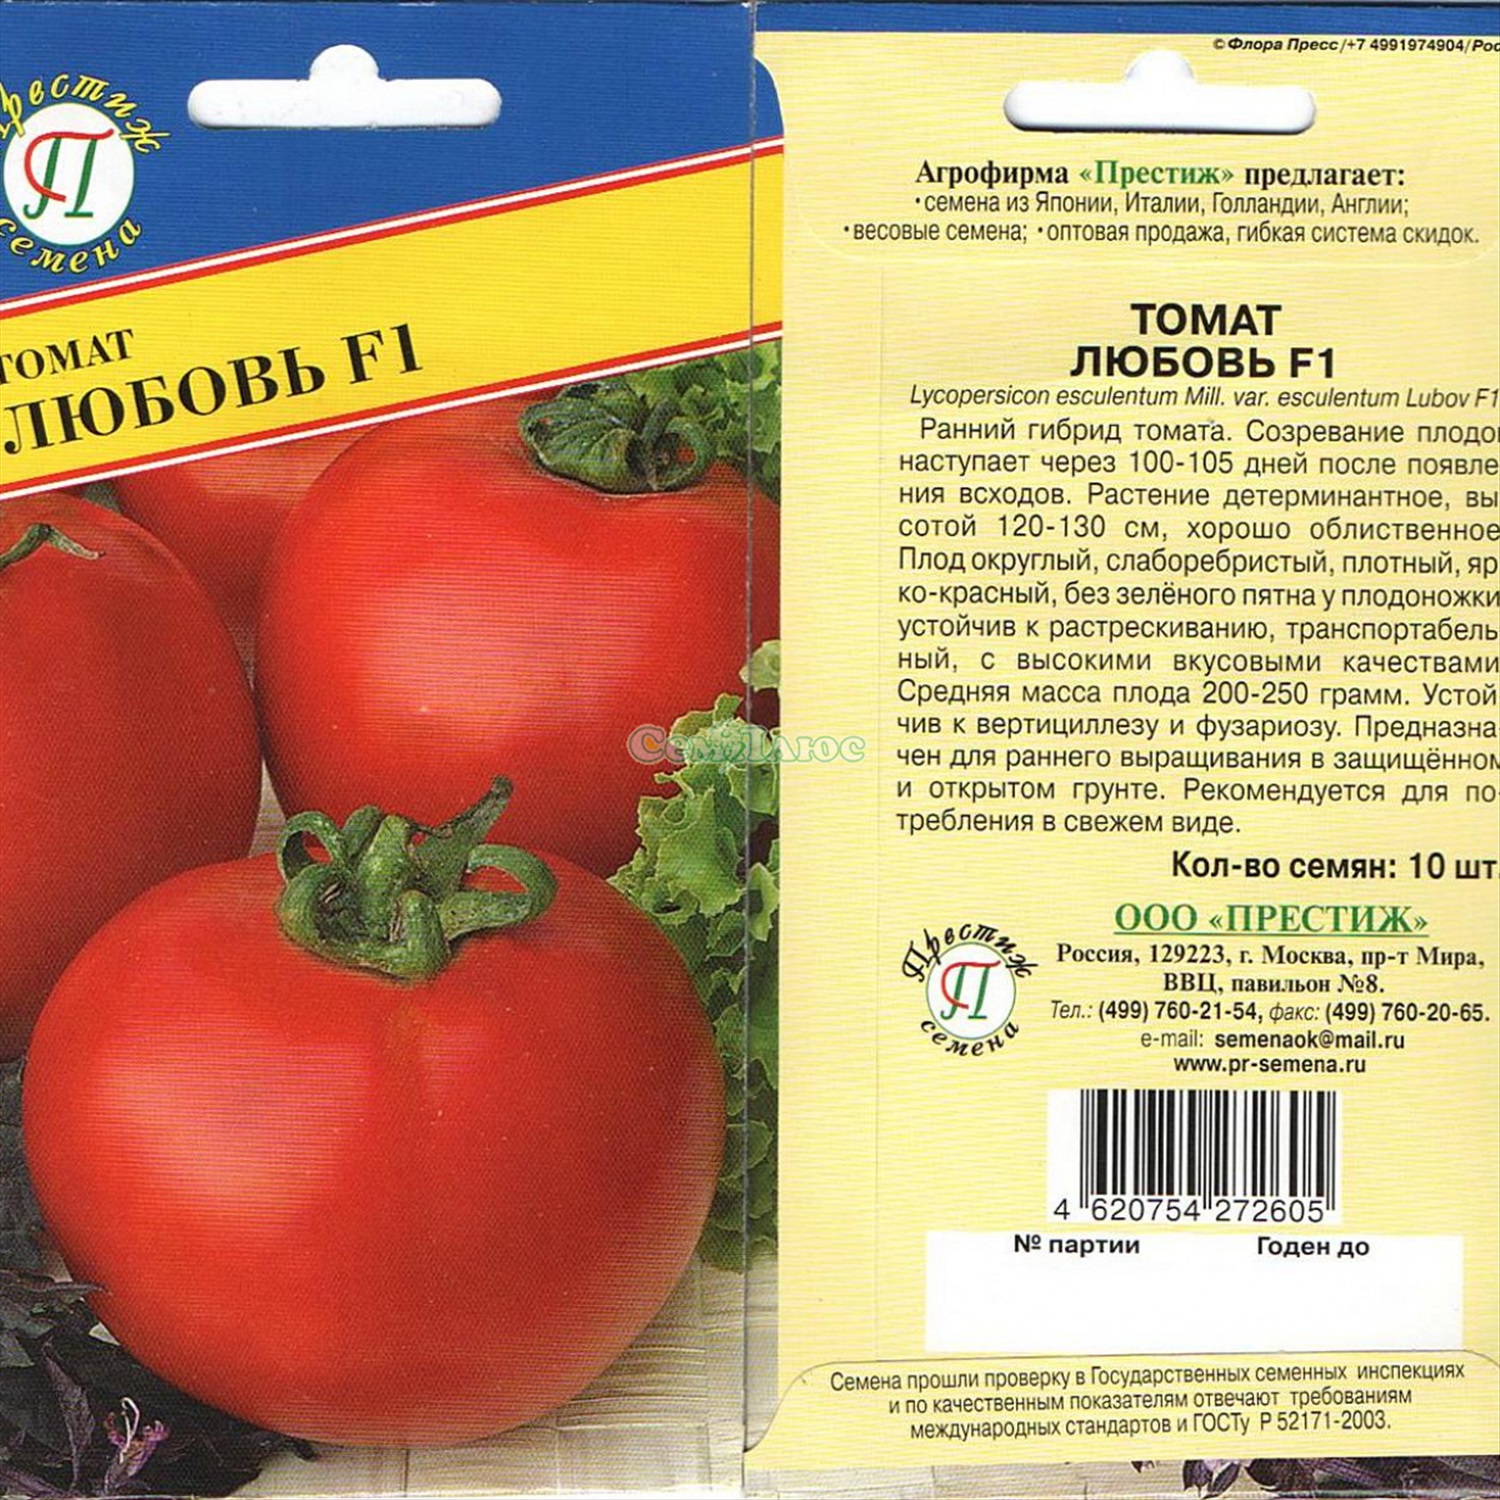 Описание и характеристика сорта томата сладкоежка, его урожайность